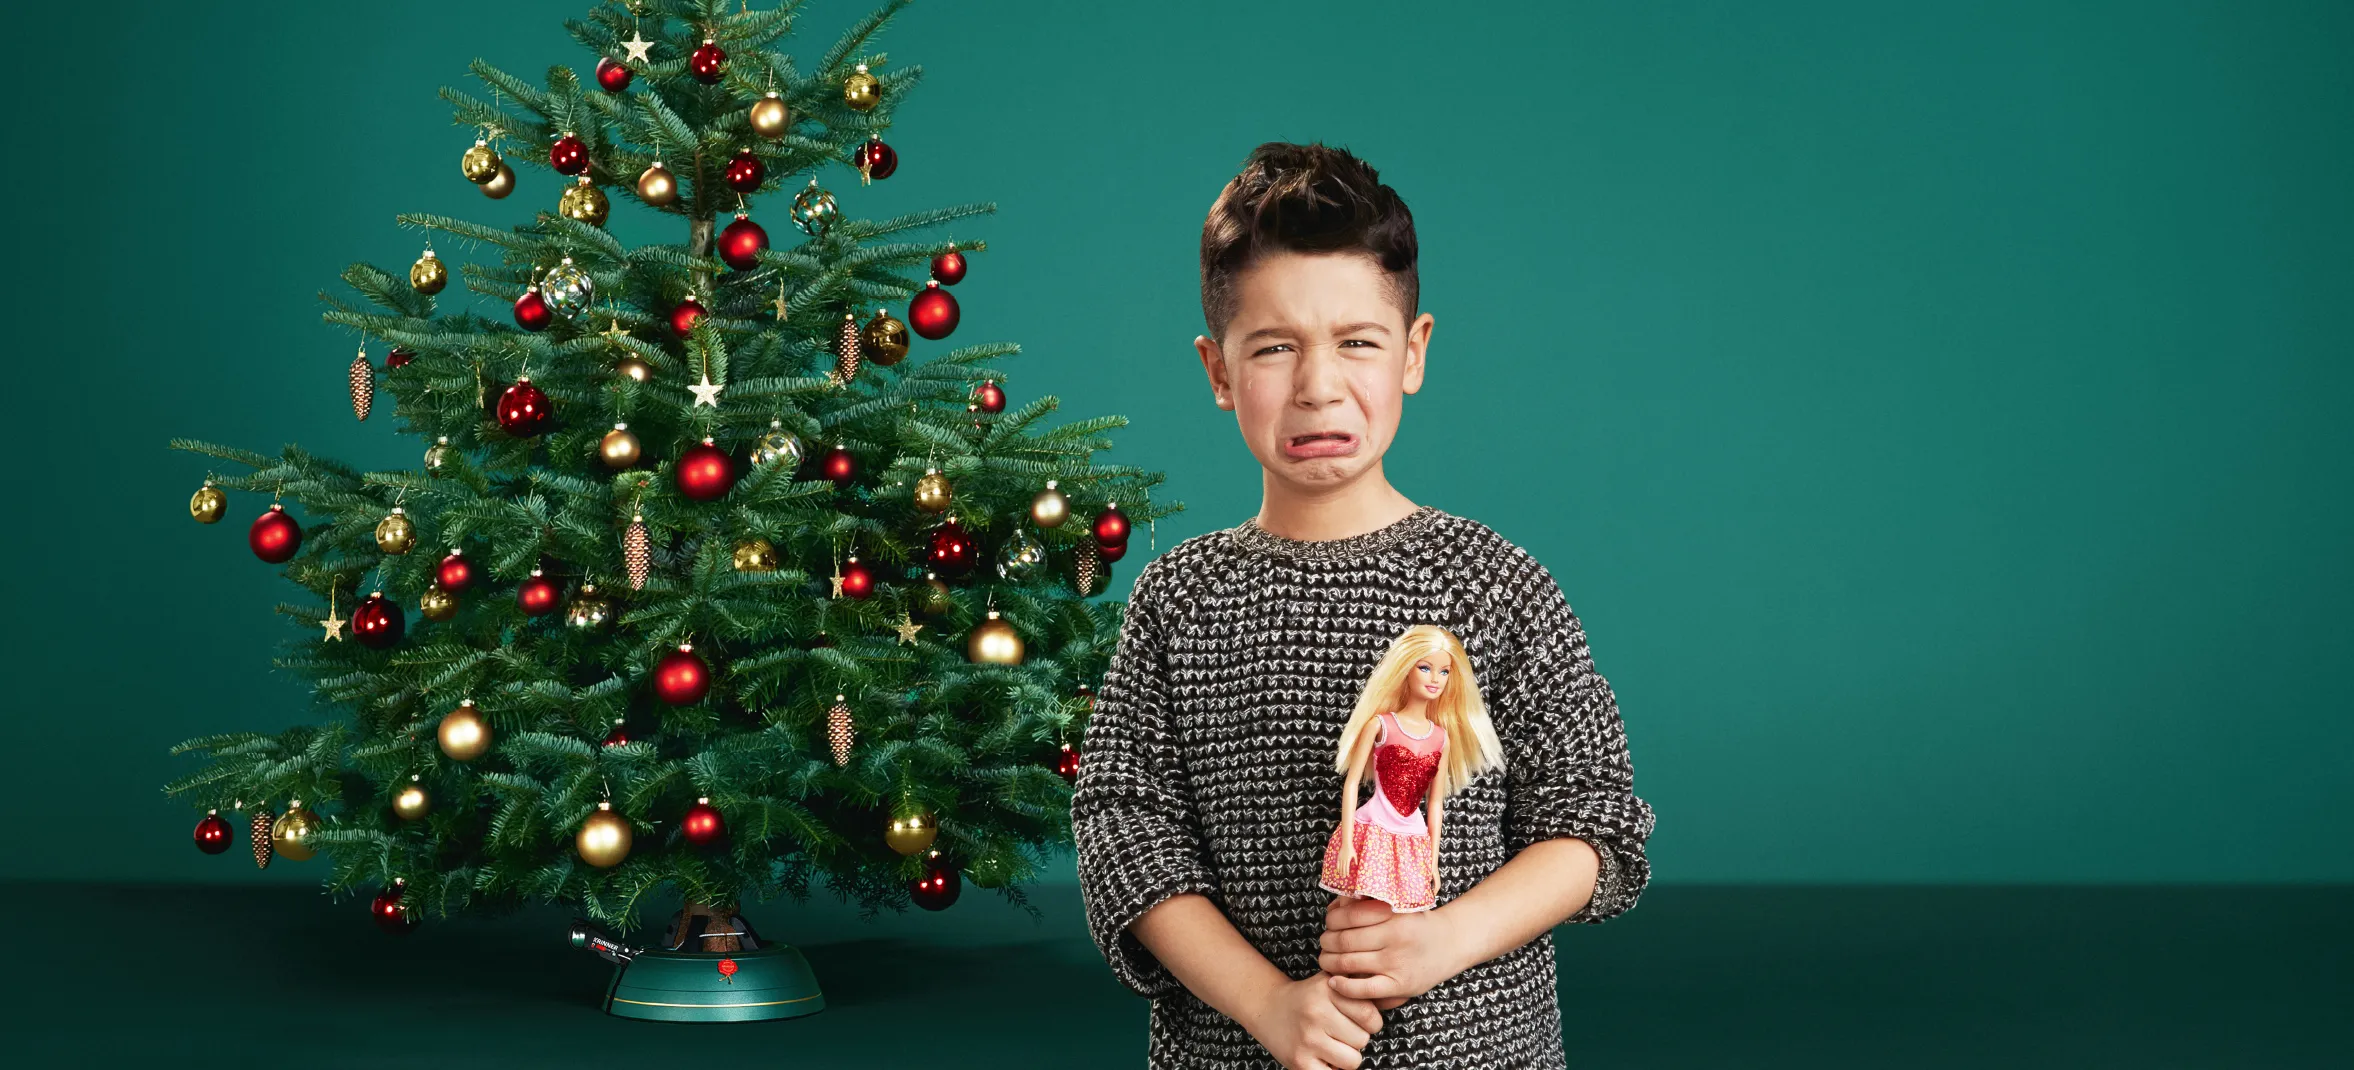 Unglücklicher Junge, der zu Weihnachten mit einer Barbie Puppe beschenkt wurde. Für unseren Kunden Krinner haben wir die Art Direction bei den Image- und Produktbildern übernommen und das Konzept und die Strategie für die Großflächen-Imagekampagne erstellt.